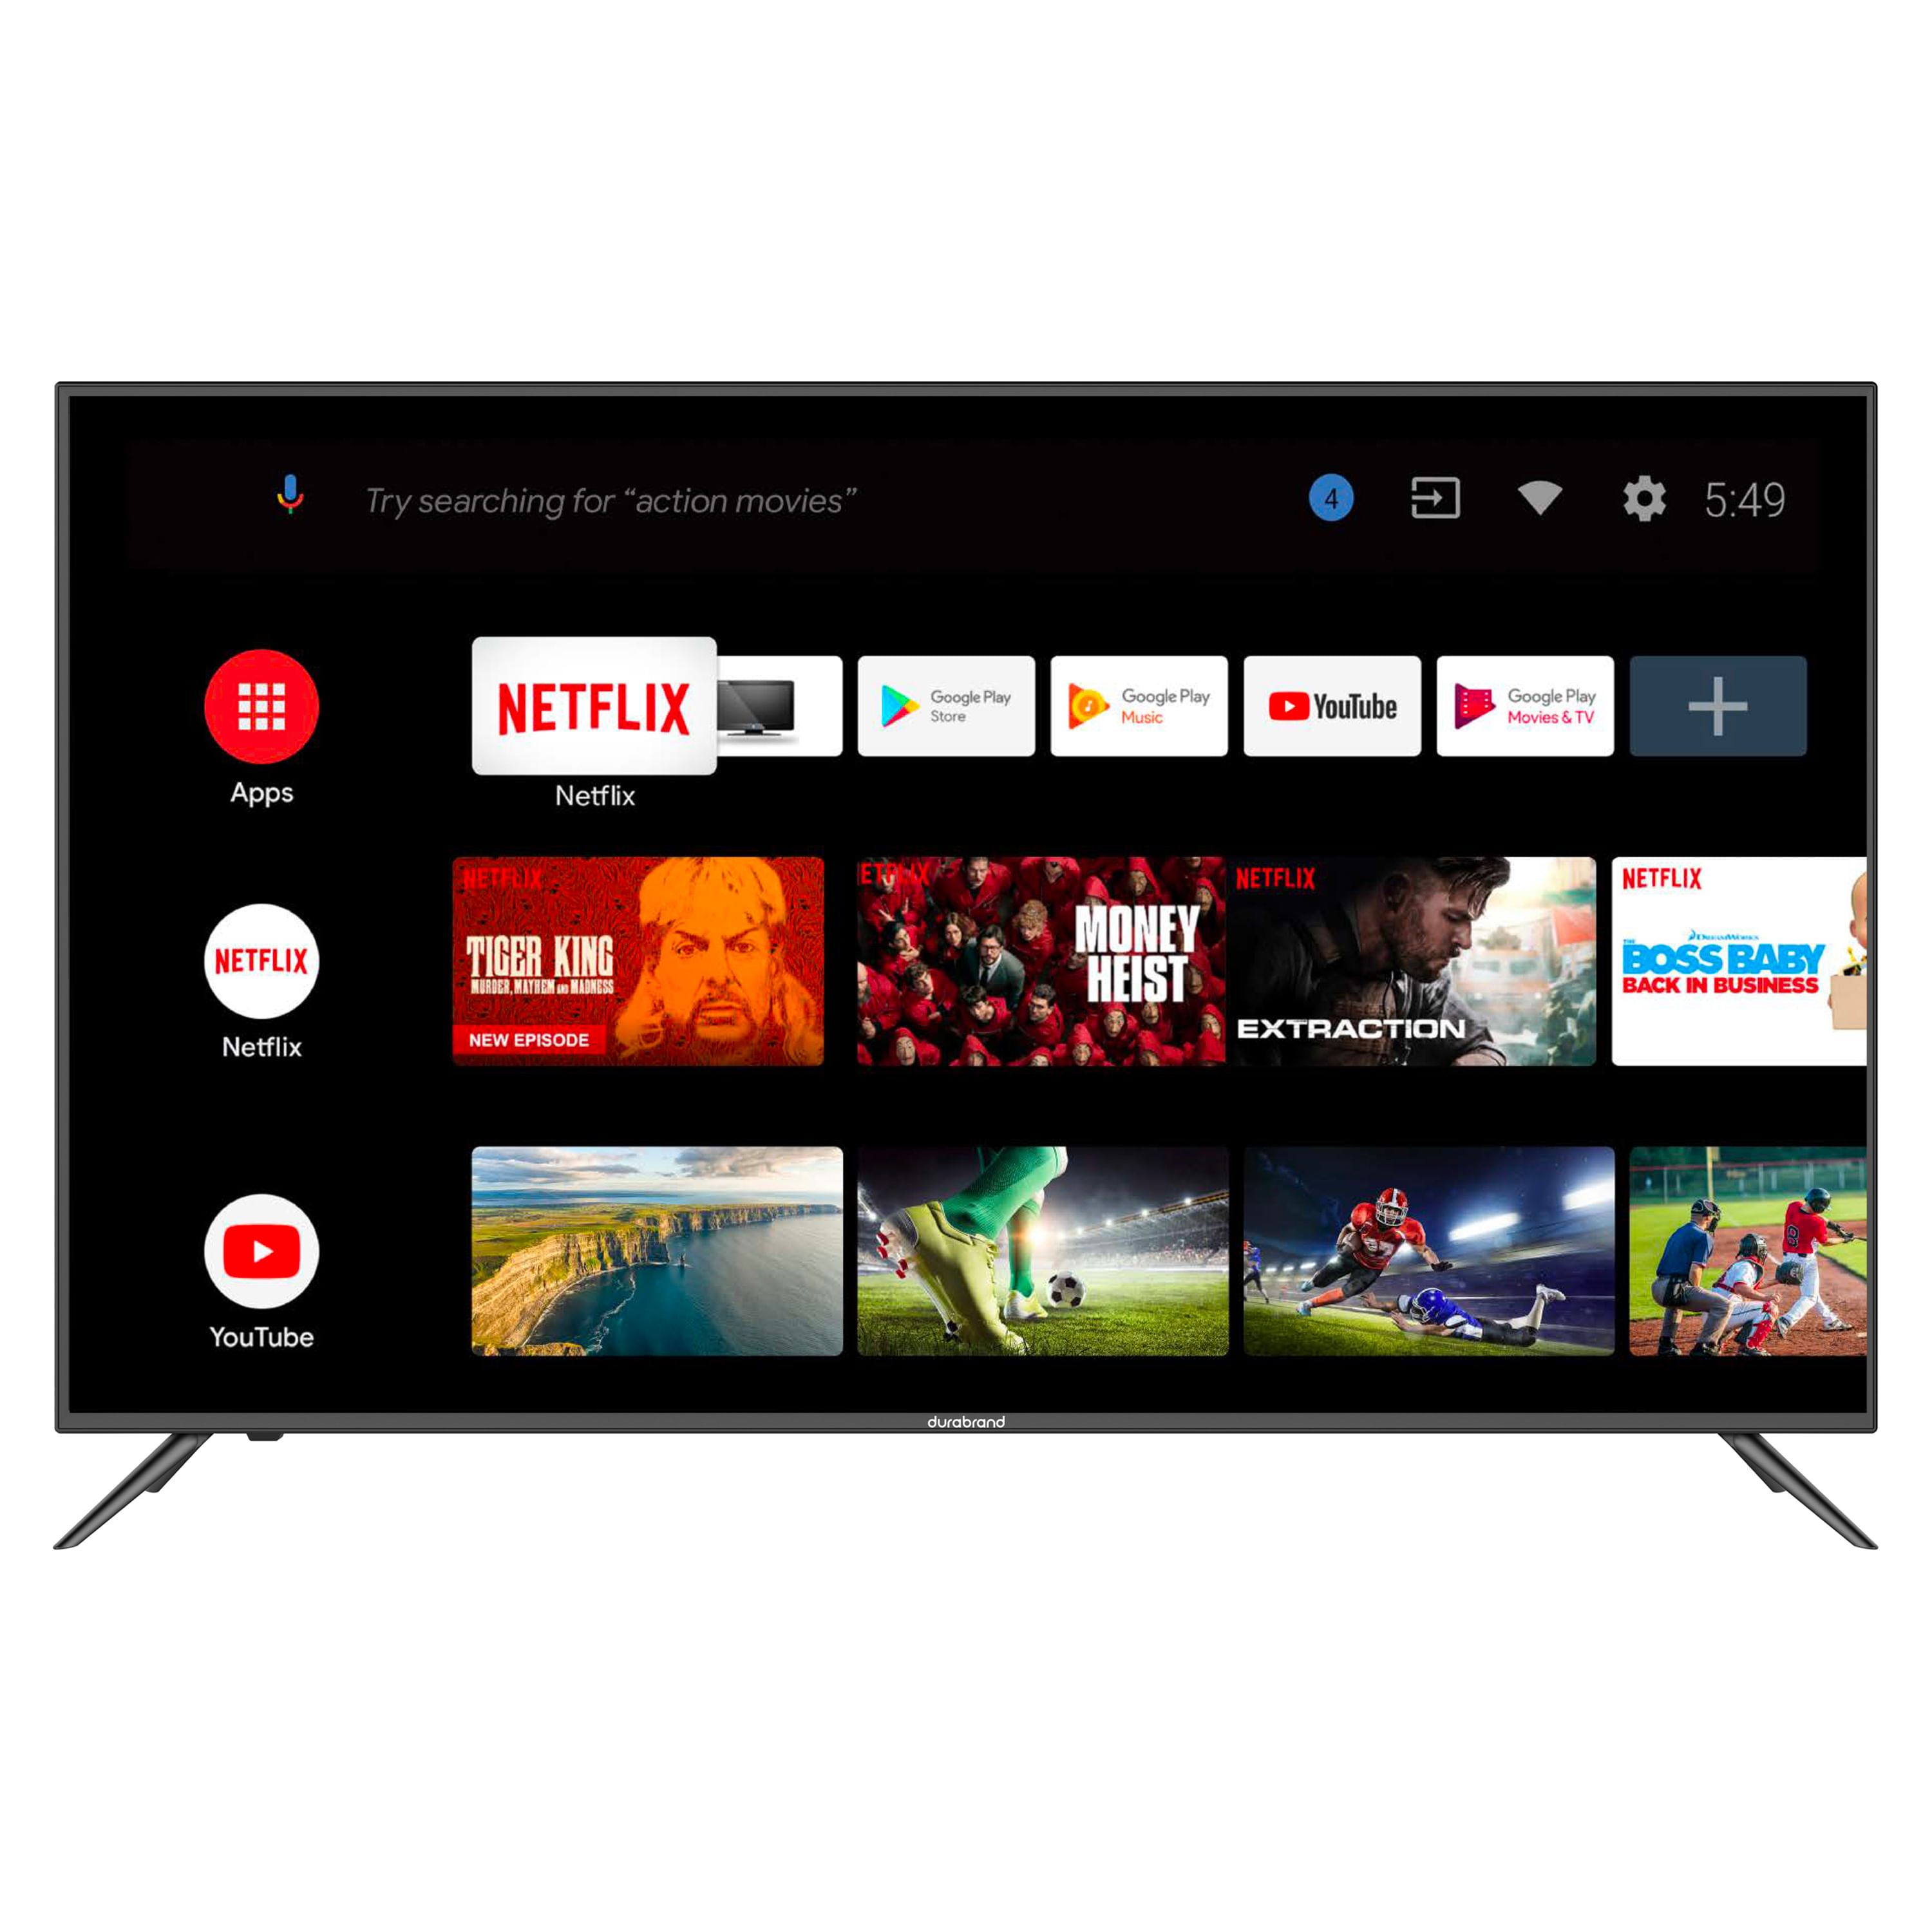 Comprar Pantalla Smart TV 4K Durabrand Led De 50 Pulgadas, Modelo:  Dura50Mugs2, Walmart Guatemala - Maxi Despensa